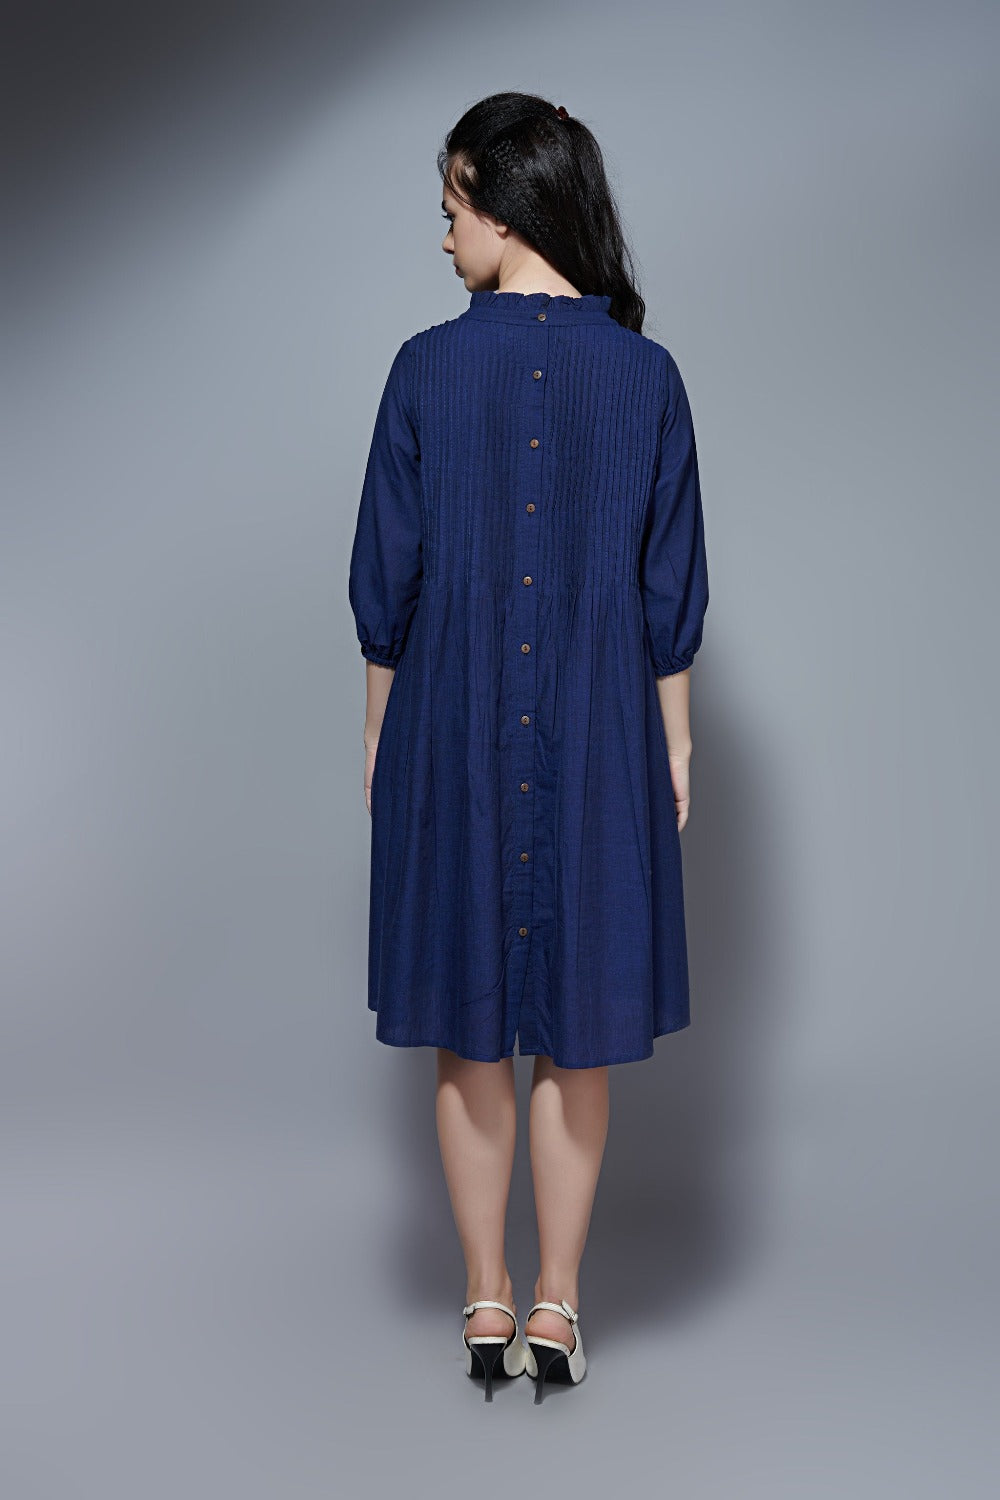 Pintuck dress – Indigo Blue